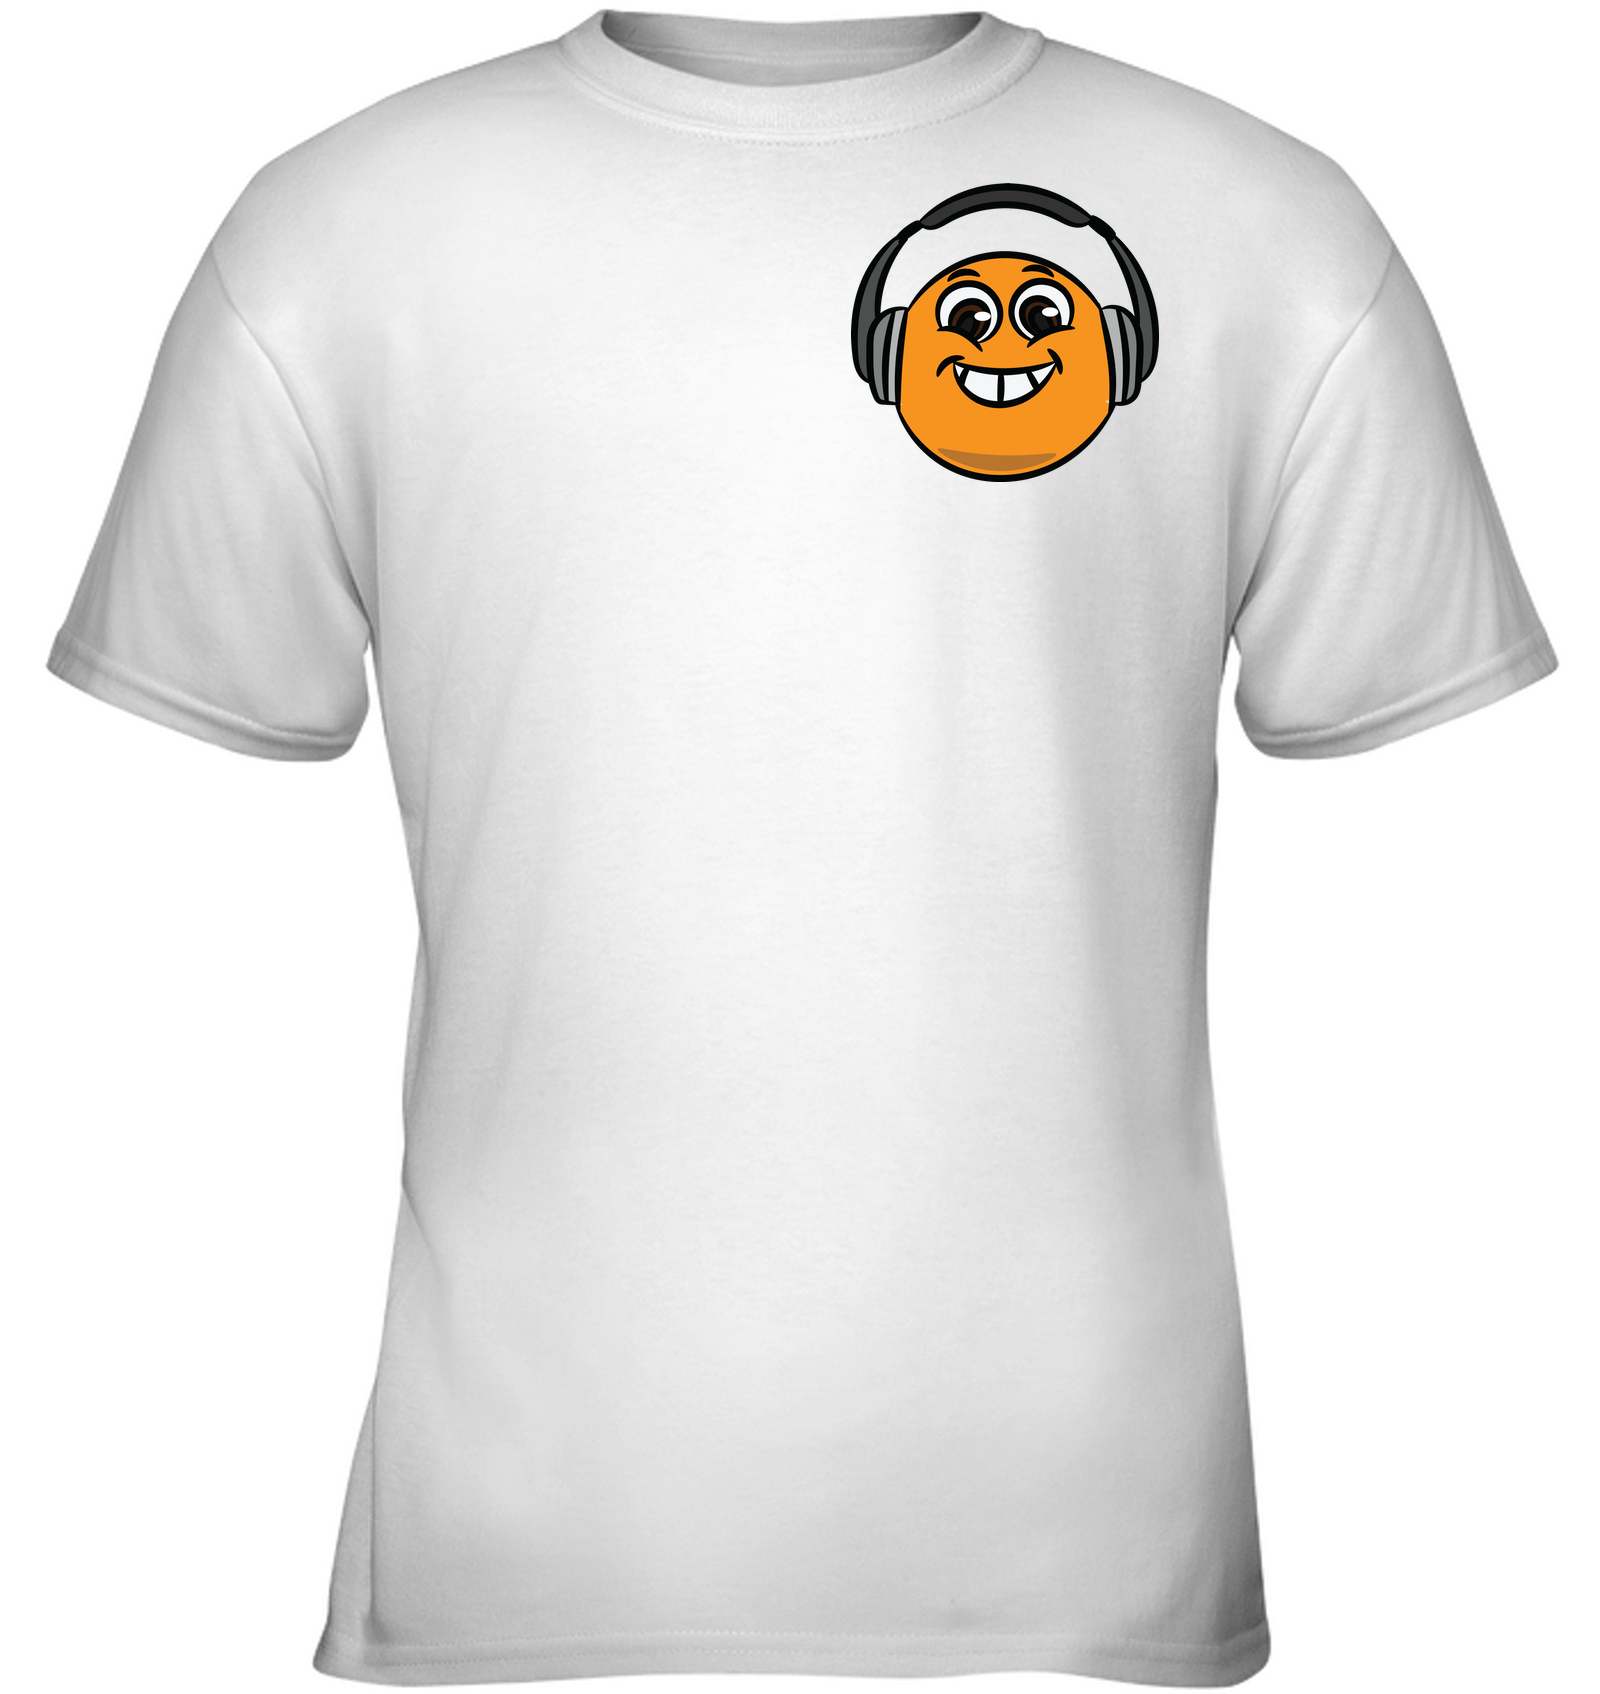 Eager Orange with Headphone (Pocket Size) - Gildan Youth Short Sleeve T-Shirt